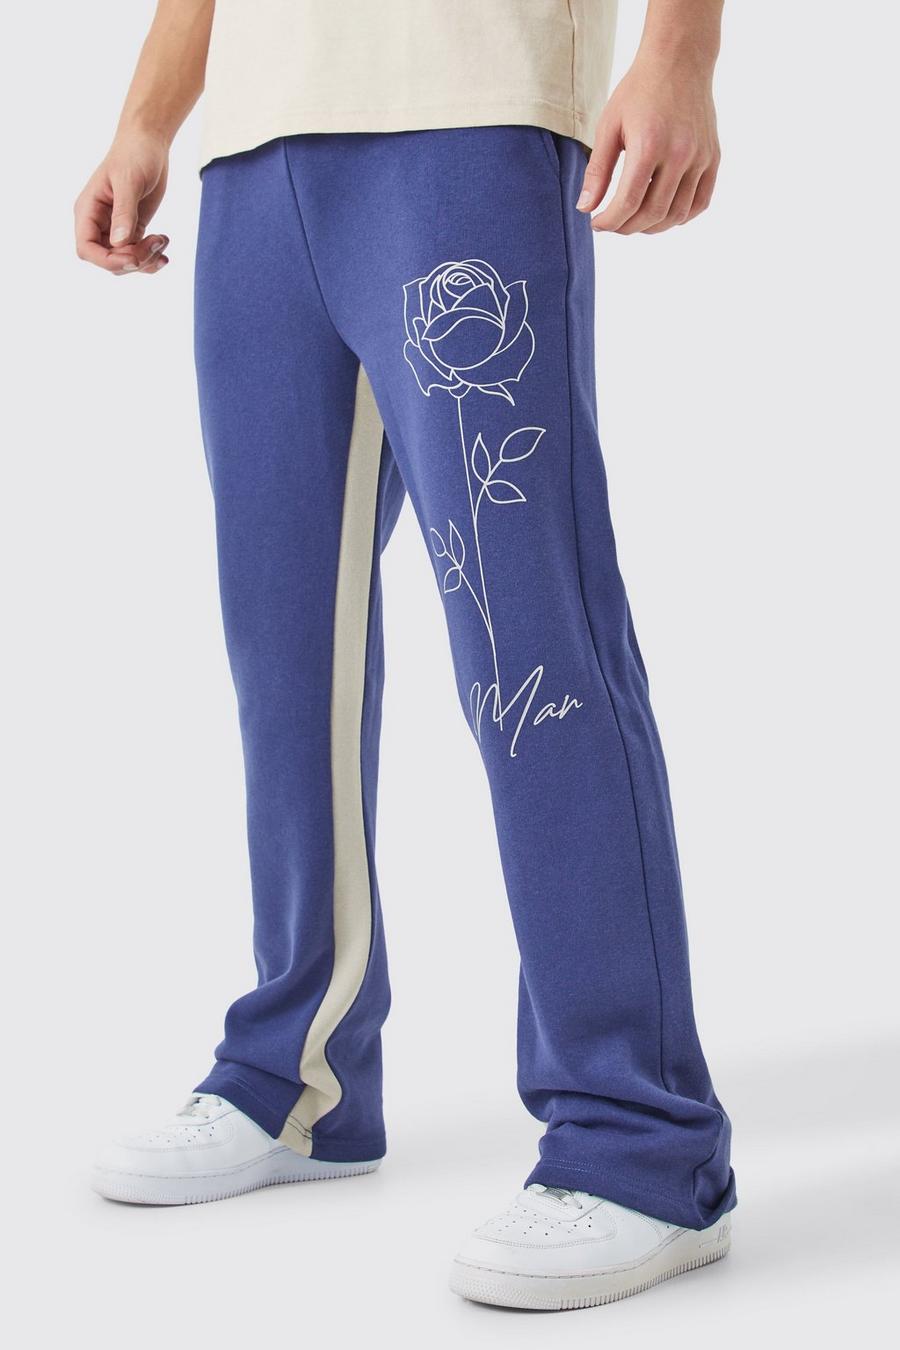 Pantaloni tuta Man con stampa di rose e inserti, Slate blue